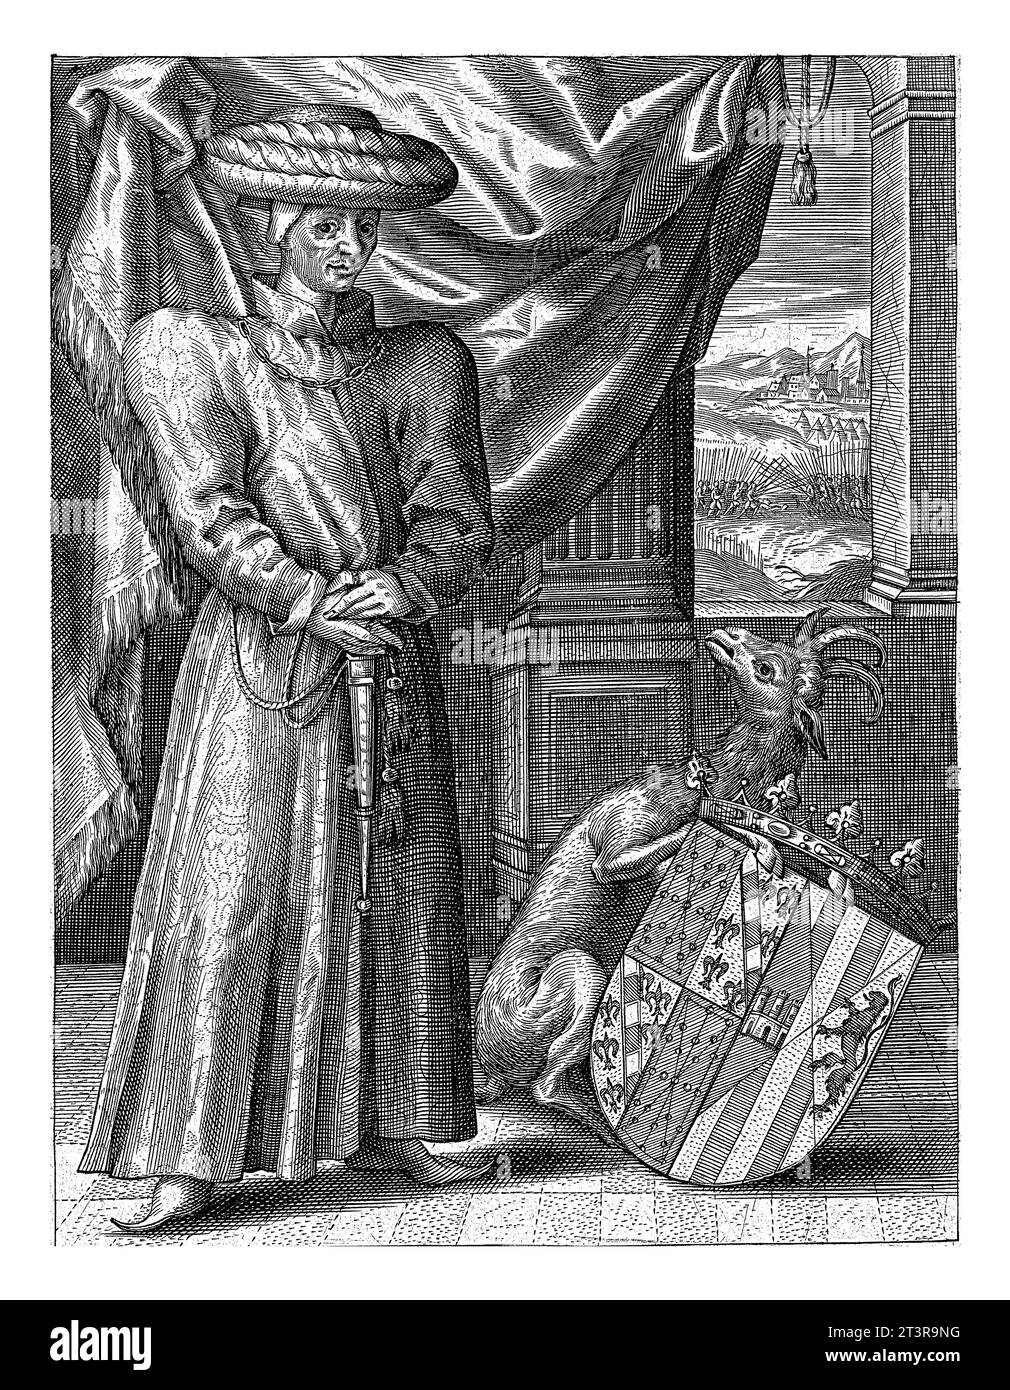 Ritratto di Giovanni III di Navarra, anonimo, c. 1550 - c. 1600 Giovanni, re di Navarra. In piedi, ai suoi piedi, davanti a un pilastro drappeggiato. Foto Stock